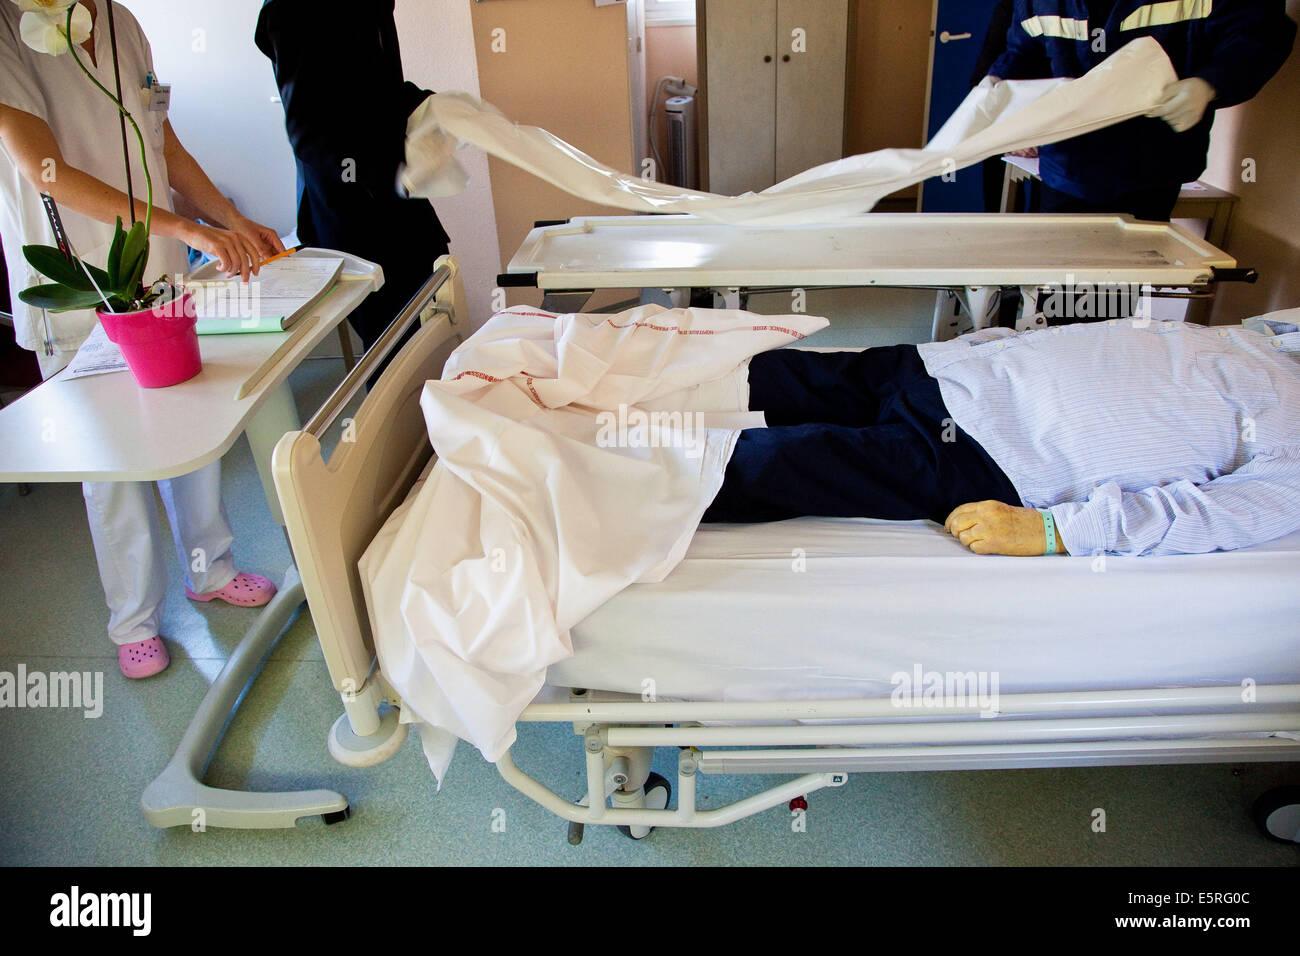 Trasferimento del paziente morto alla camera mortuaria, Cure Palliative dipartimento, ospedale di puteaux, Francia. Foto Stock